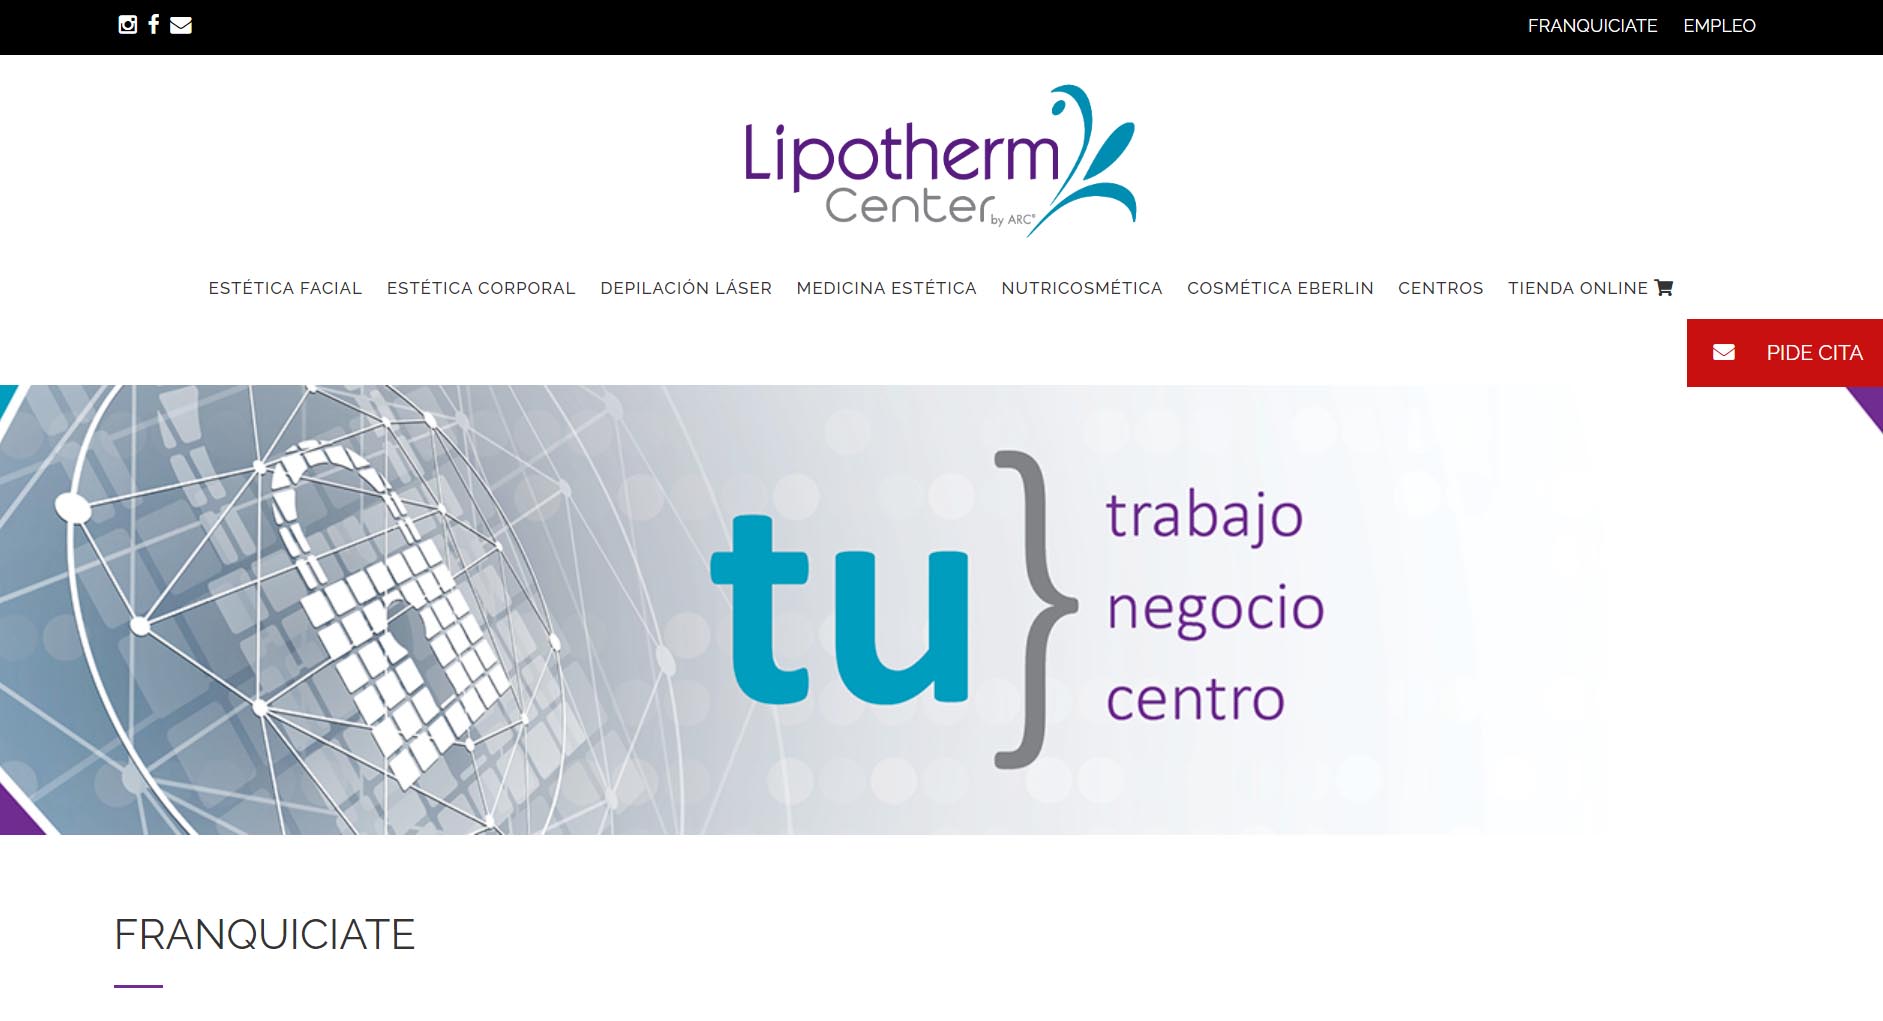 Ejemplos de las franquicias más rentables en España: Lipotherm Center